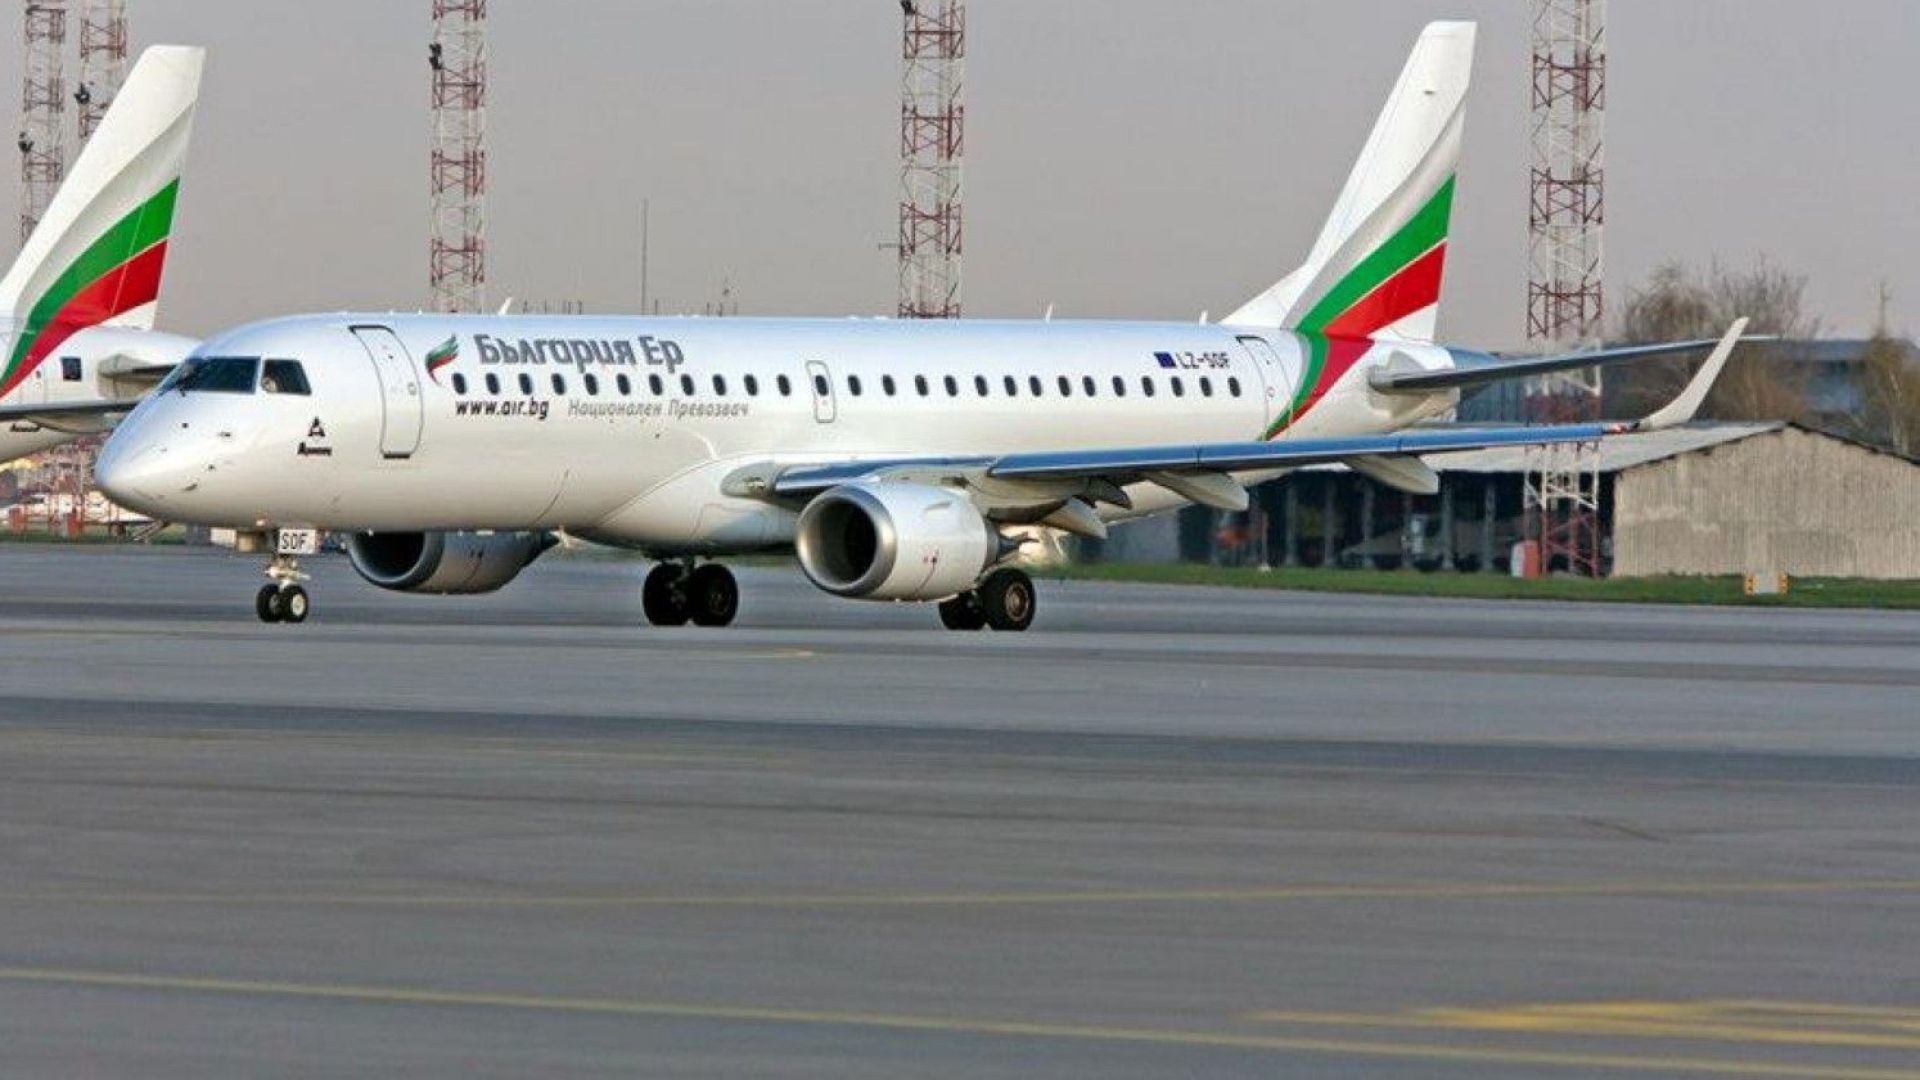 "България Ер" пак ще лети между София и Бургас от 29 юни